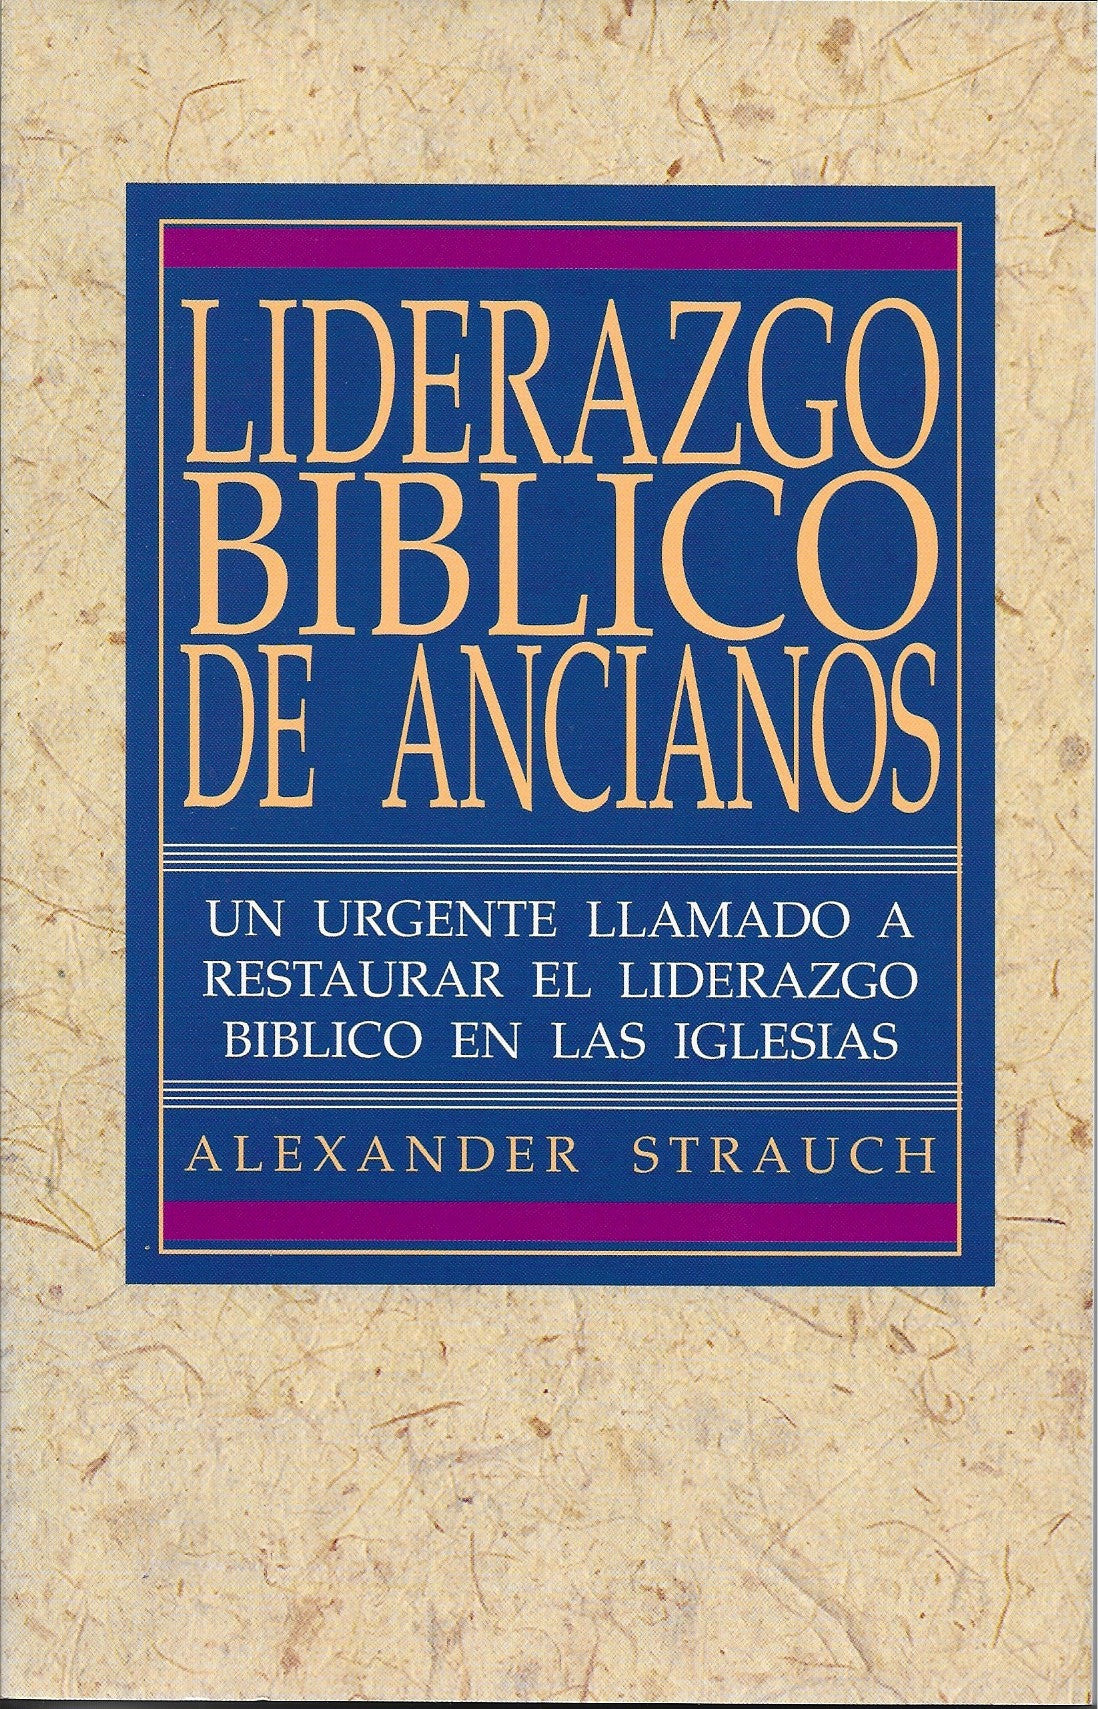 Liderazgo Bíblico: Guía del mentor por Alexander Strauch (Biblical Eldership Leader's Guide)